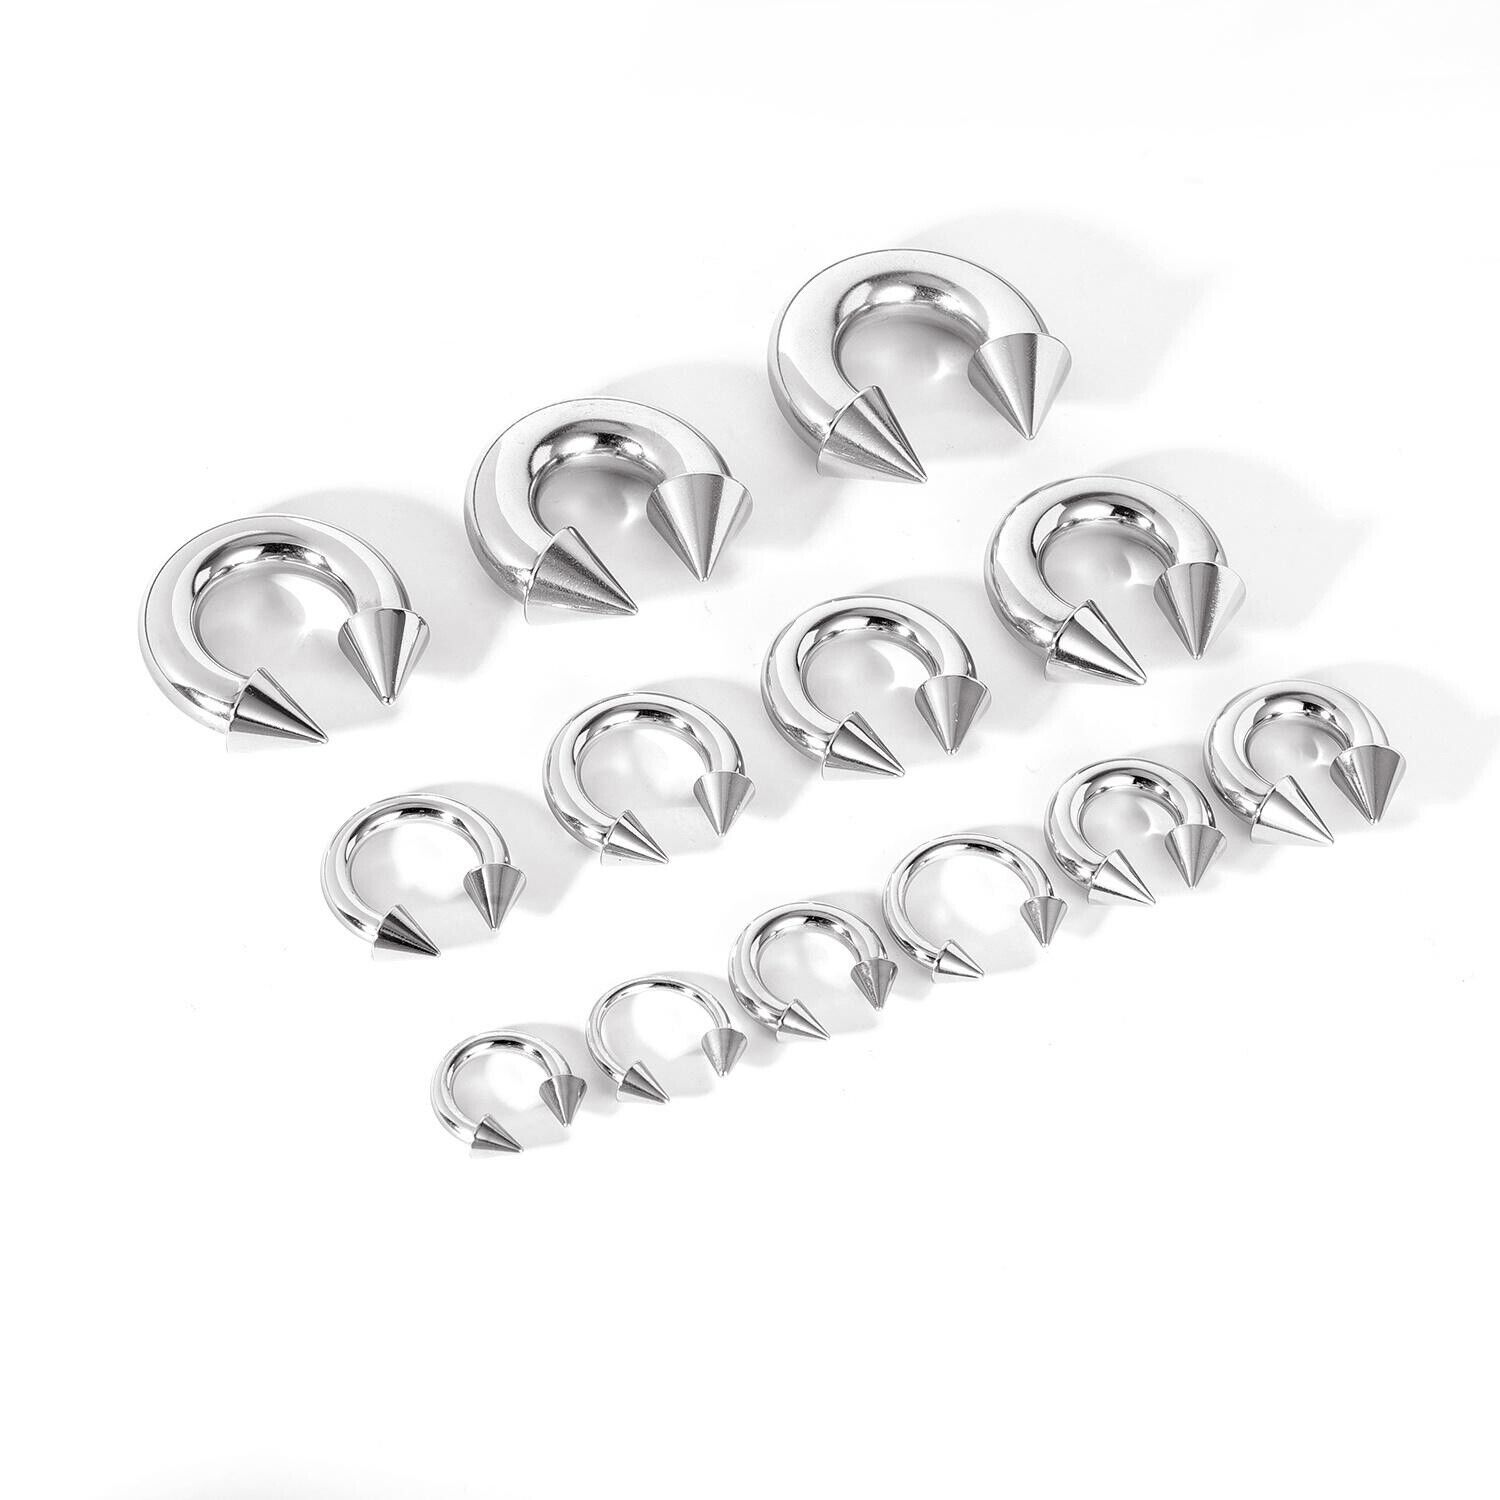 1 Pair Large Gauge Surgical Steel Nose Septum Ring Spike Ear Gauge Earrings